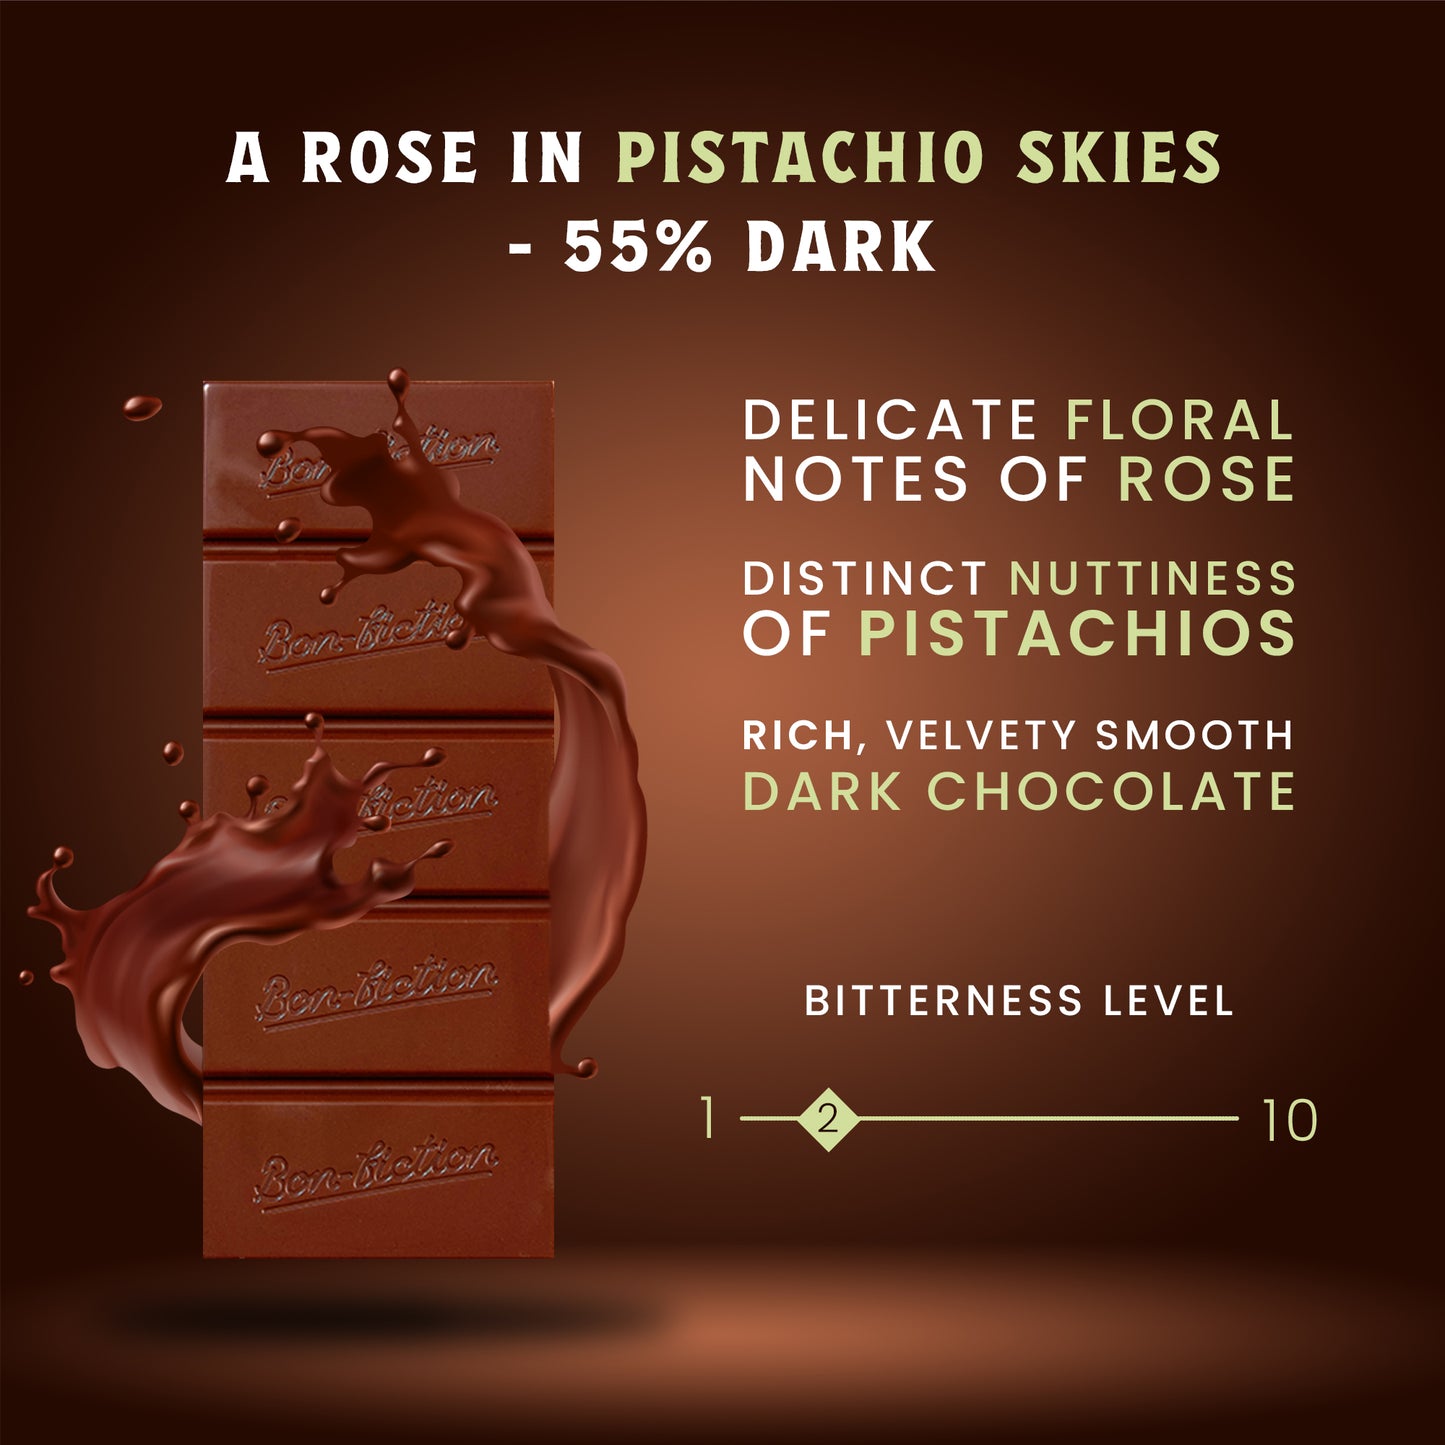 A Rose In Pistachio Skies - 55% Dark Rose Pistachio Chocolate - Pack of 3